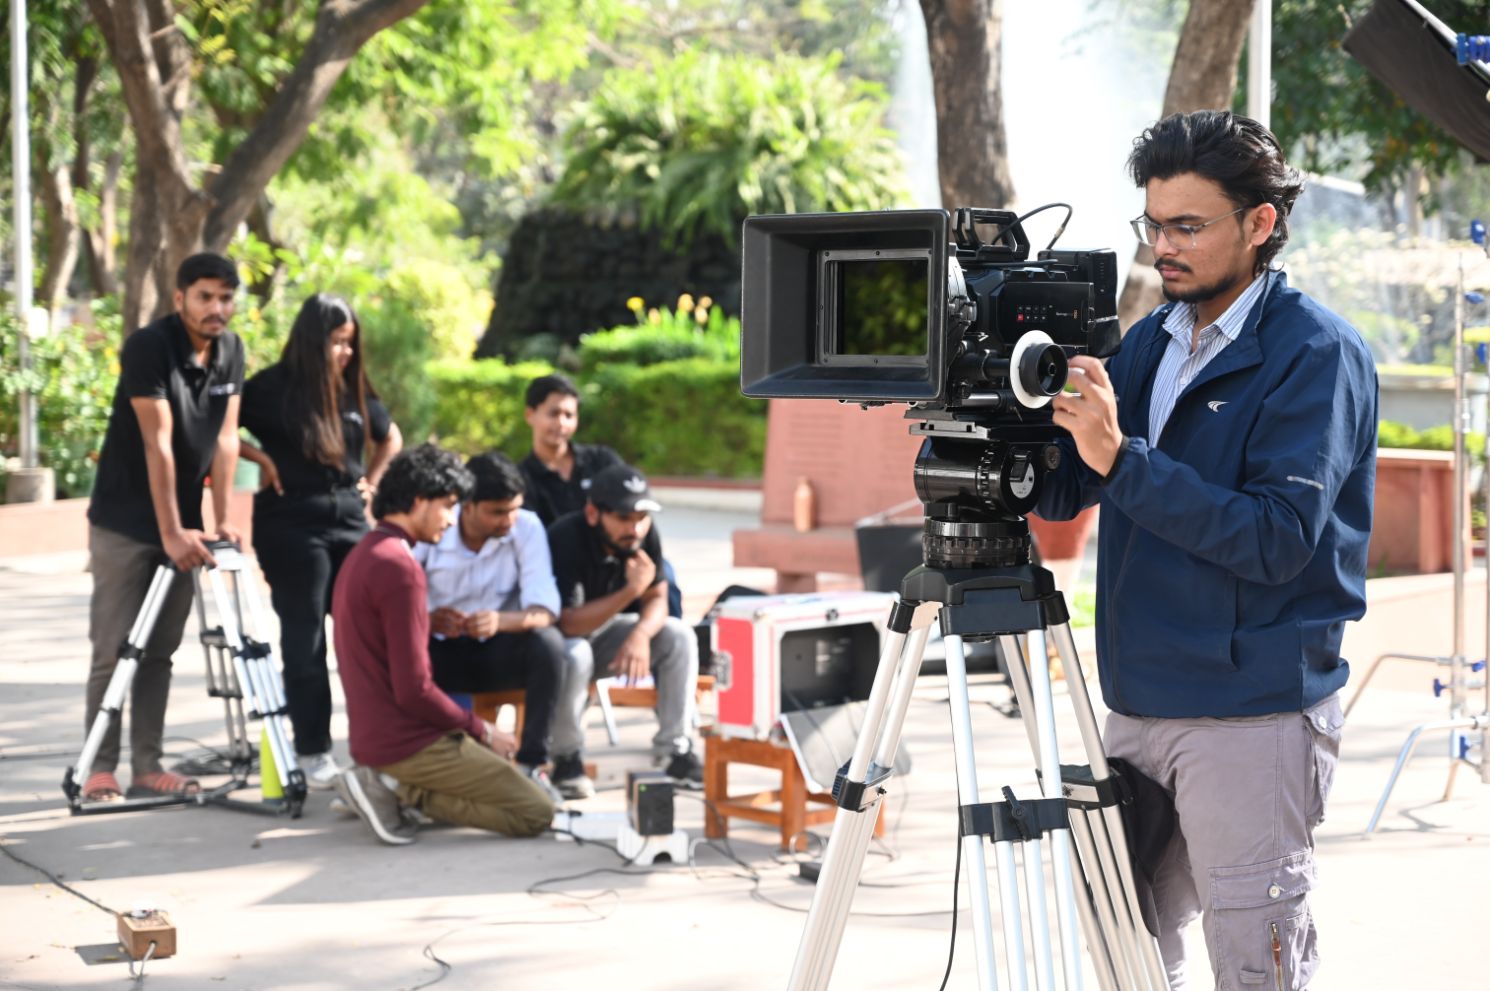 Diploma in Film Making là bước đệm hoàn hảo cho sự nghiệp điện ảnh của bạn. Khóa học này sẽ giúp bạn nắm vững các kỹ thuật sản xuất phim, rèn luyện tài năng của mình và được đào tạo bởi các chuyên gia hàng đầu trong lĩnh vực điện ảnh.